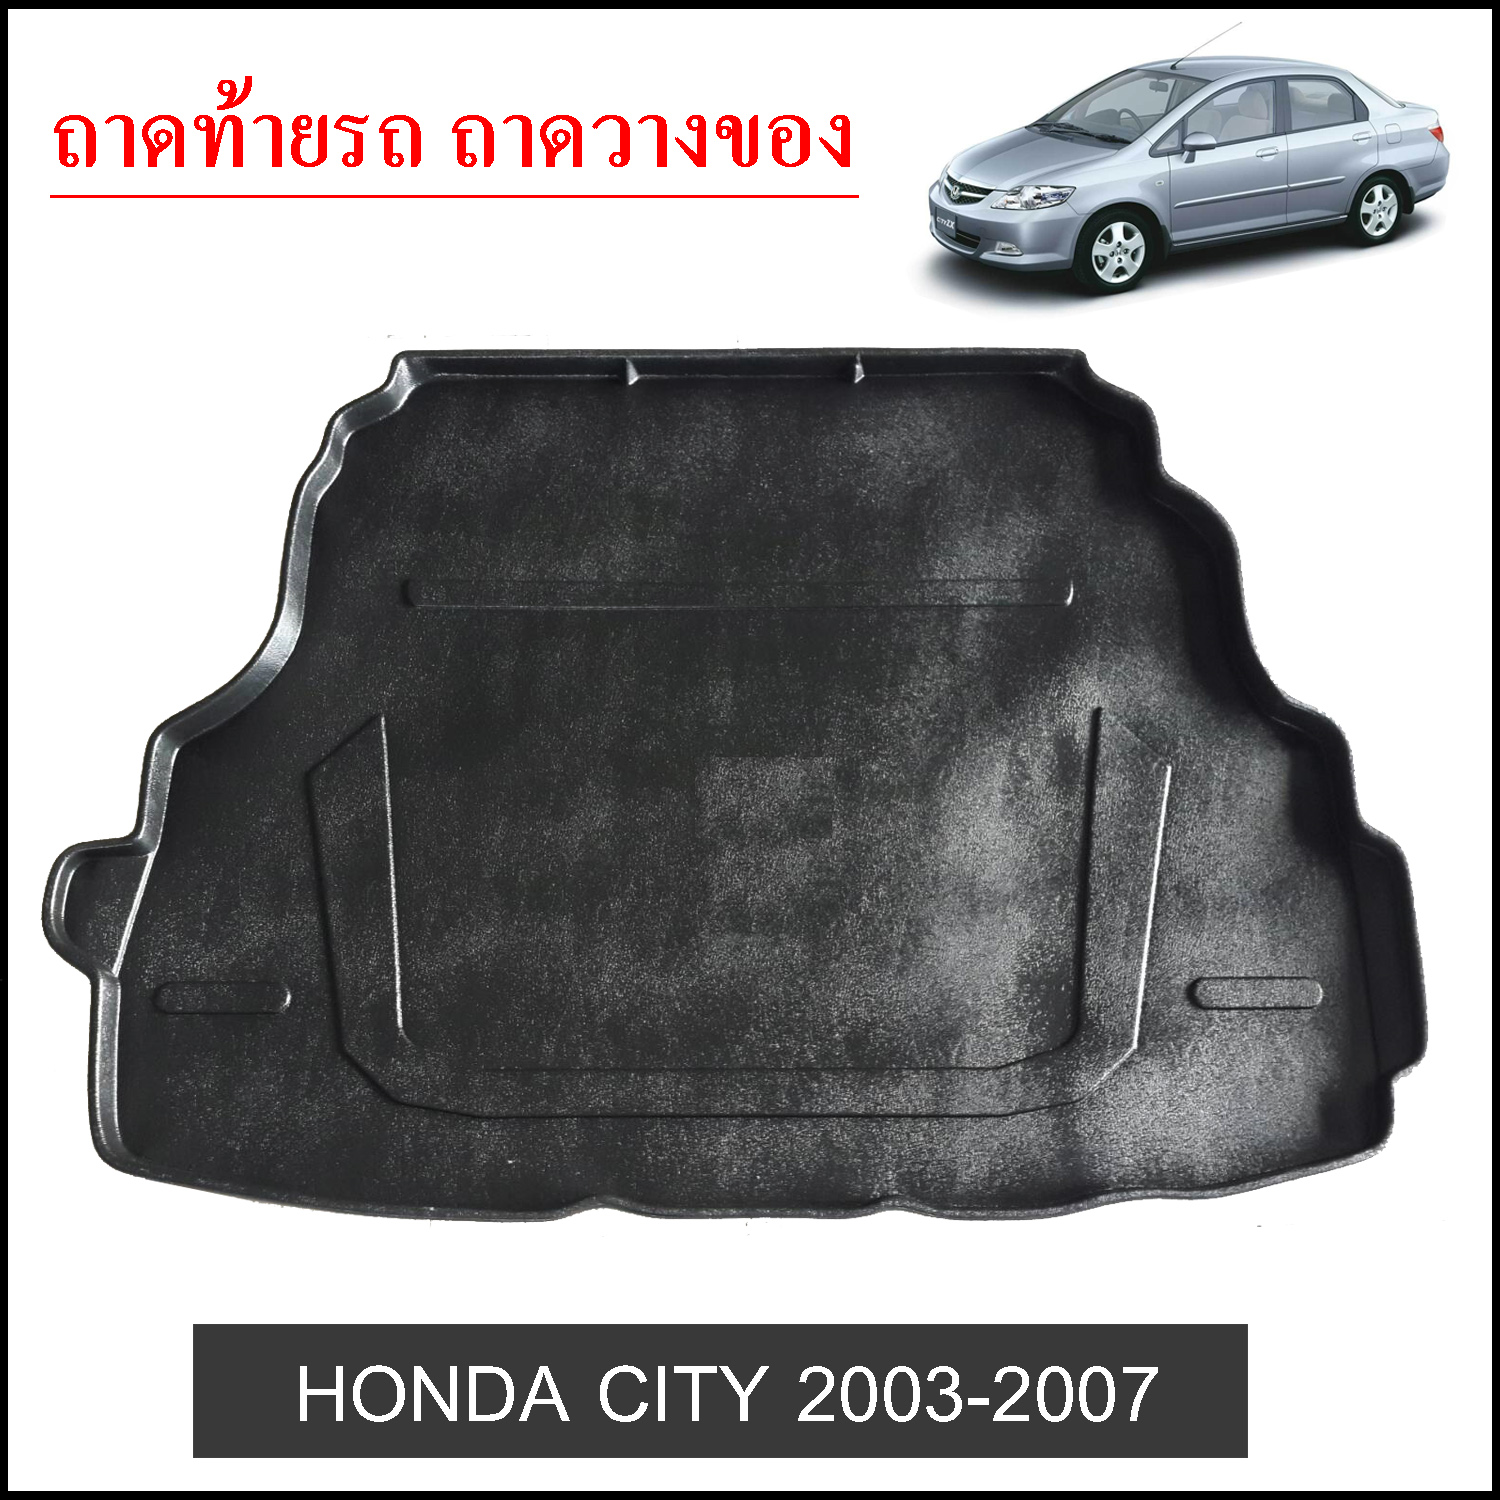 ถาดท้ายวางของ Honda City 2003-2007